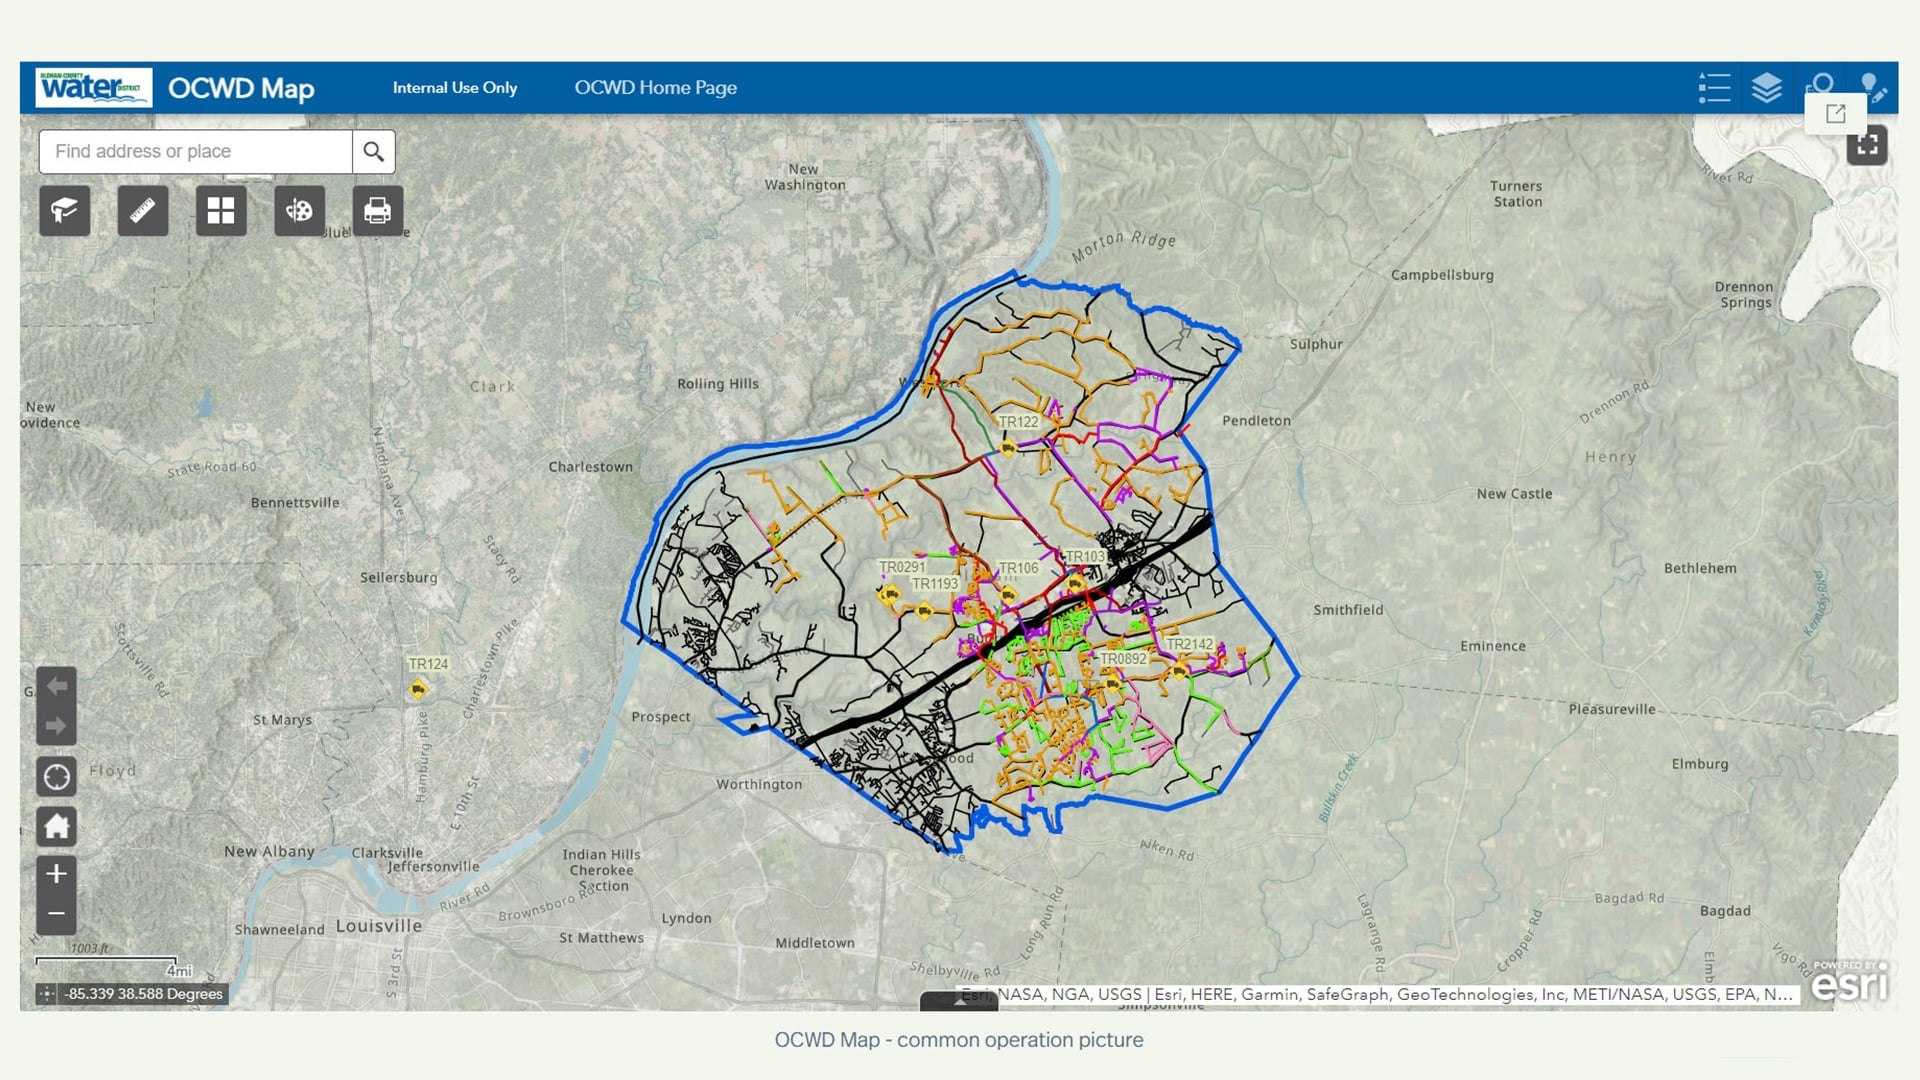 NRWA Eos Webinar: OCWD District Map